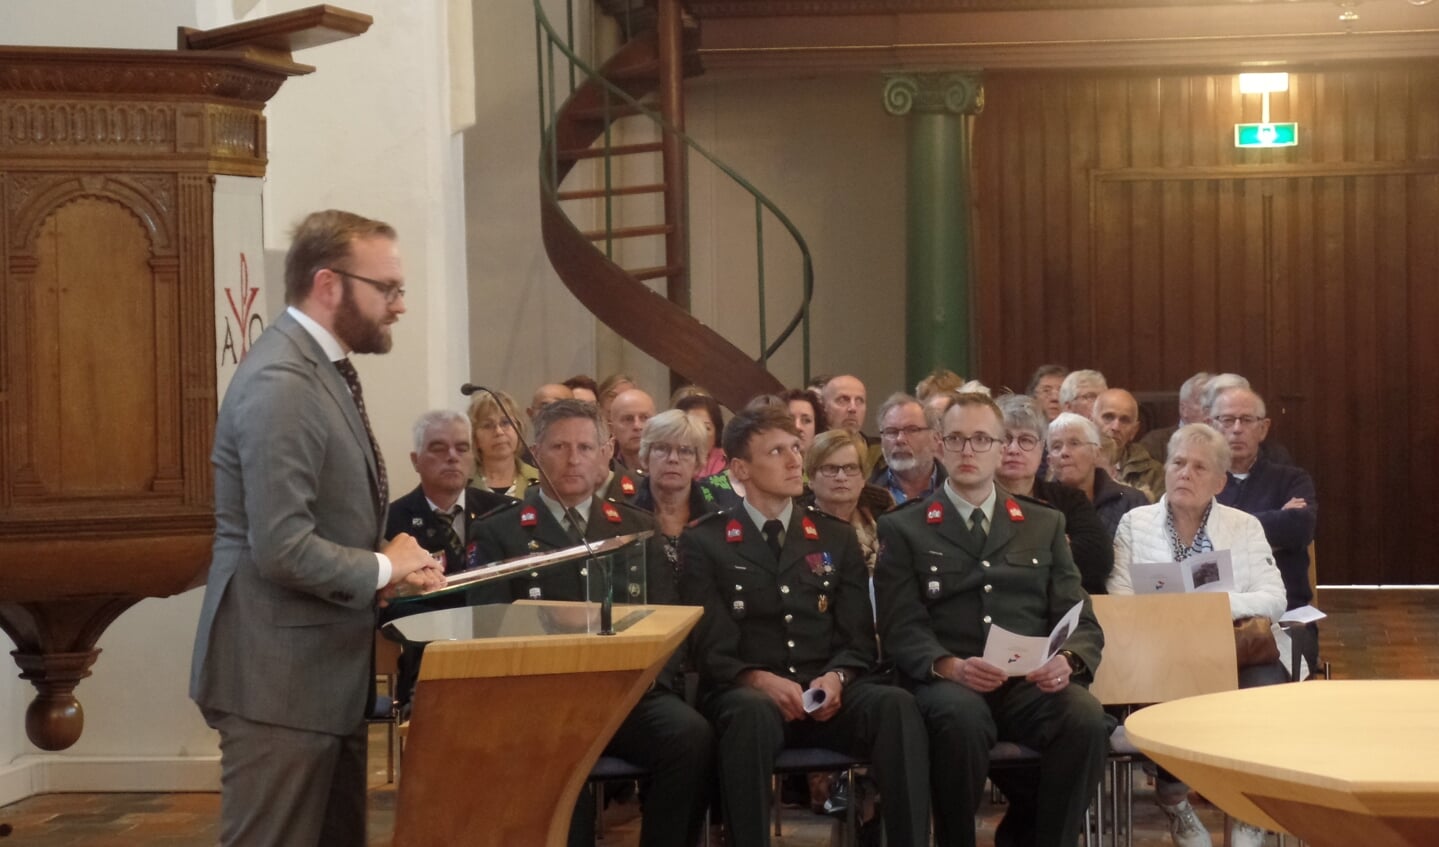 Namens de gemeente Berkelland sprak wethouder Gerjan Teselink tijdens de herdenkingsbijeenkomst in de Dorpskerk. 